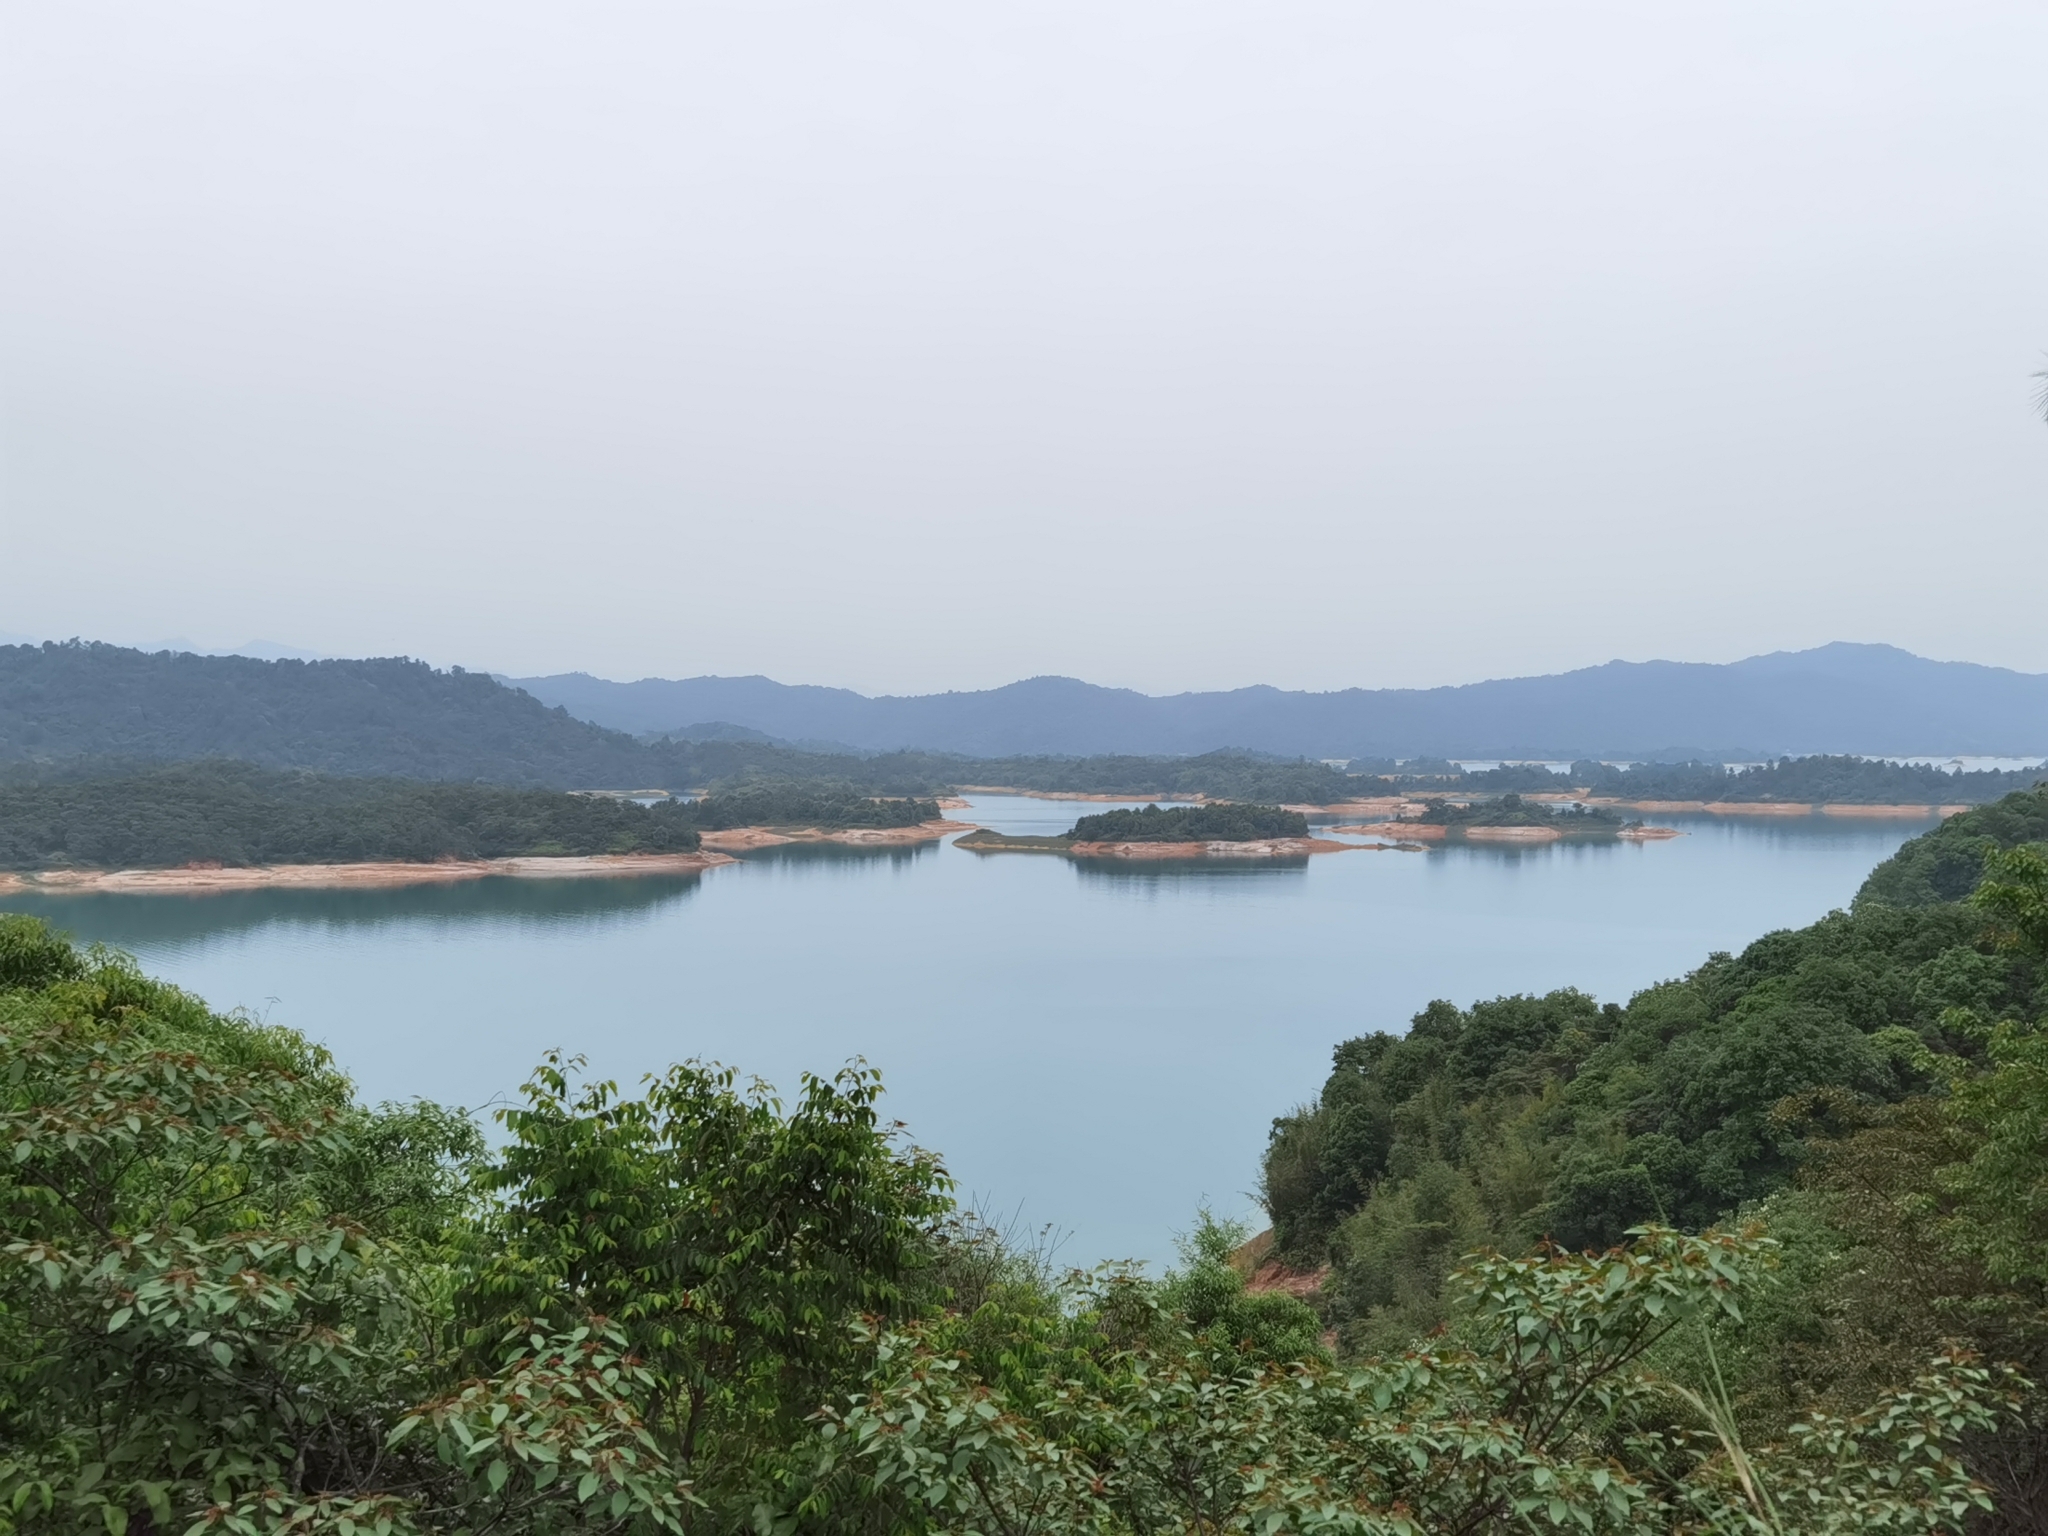 桂山风景区,风景区背靠河源第一高峰桂山,面对华南最大的人工湖万绿湖